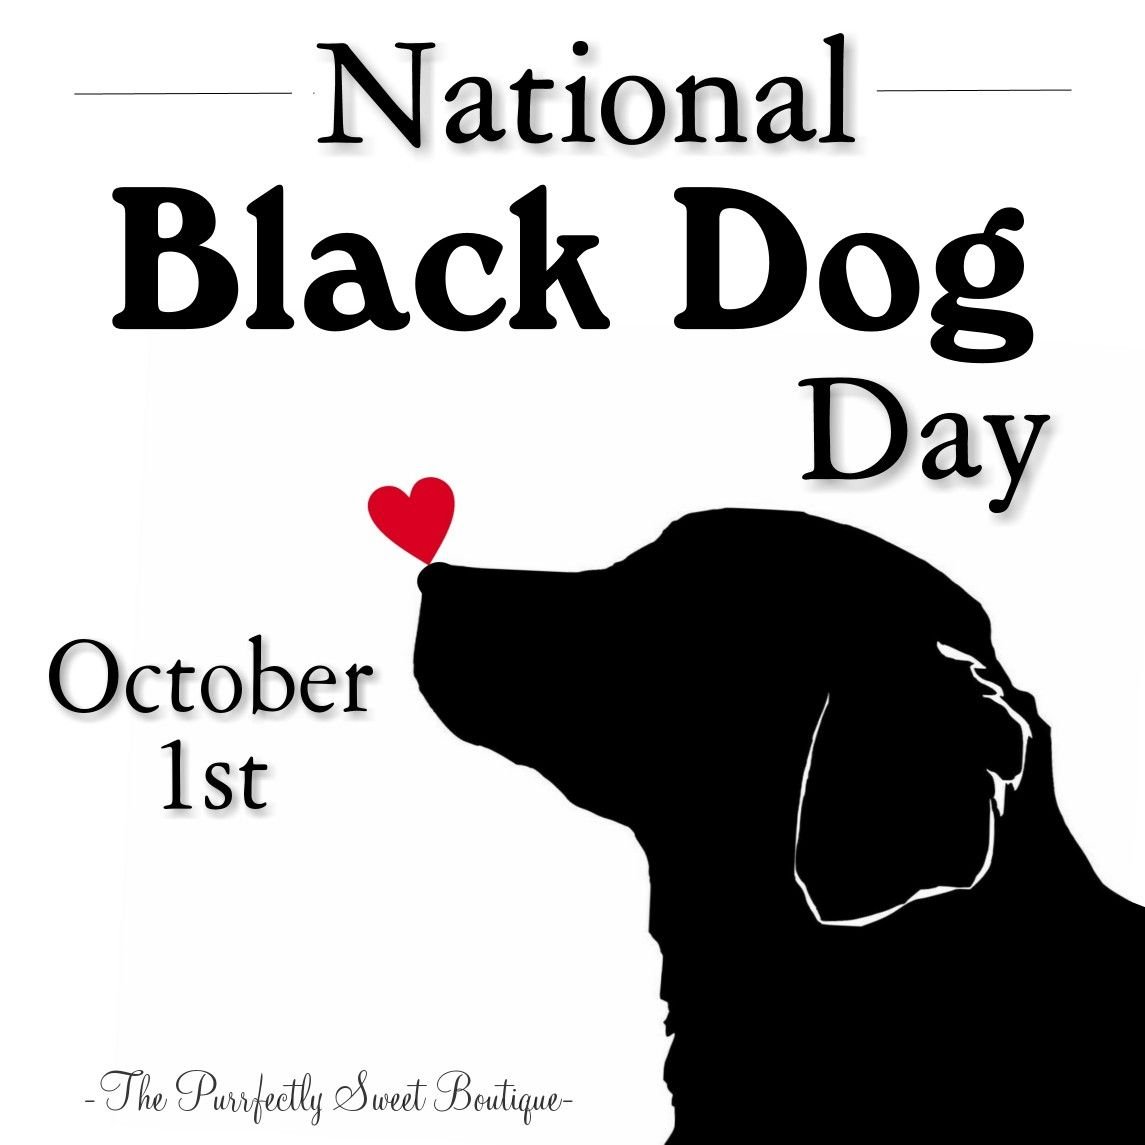 Дог дей игрушка купить. Дог Дэй дог Дэй. День черной собаки. День черной собаки 1 октября. День чёрных собак (National Black Dog Day) - США.